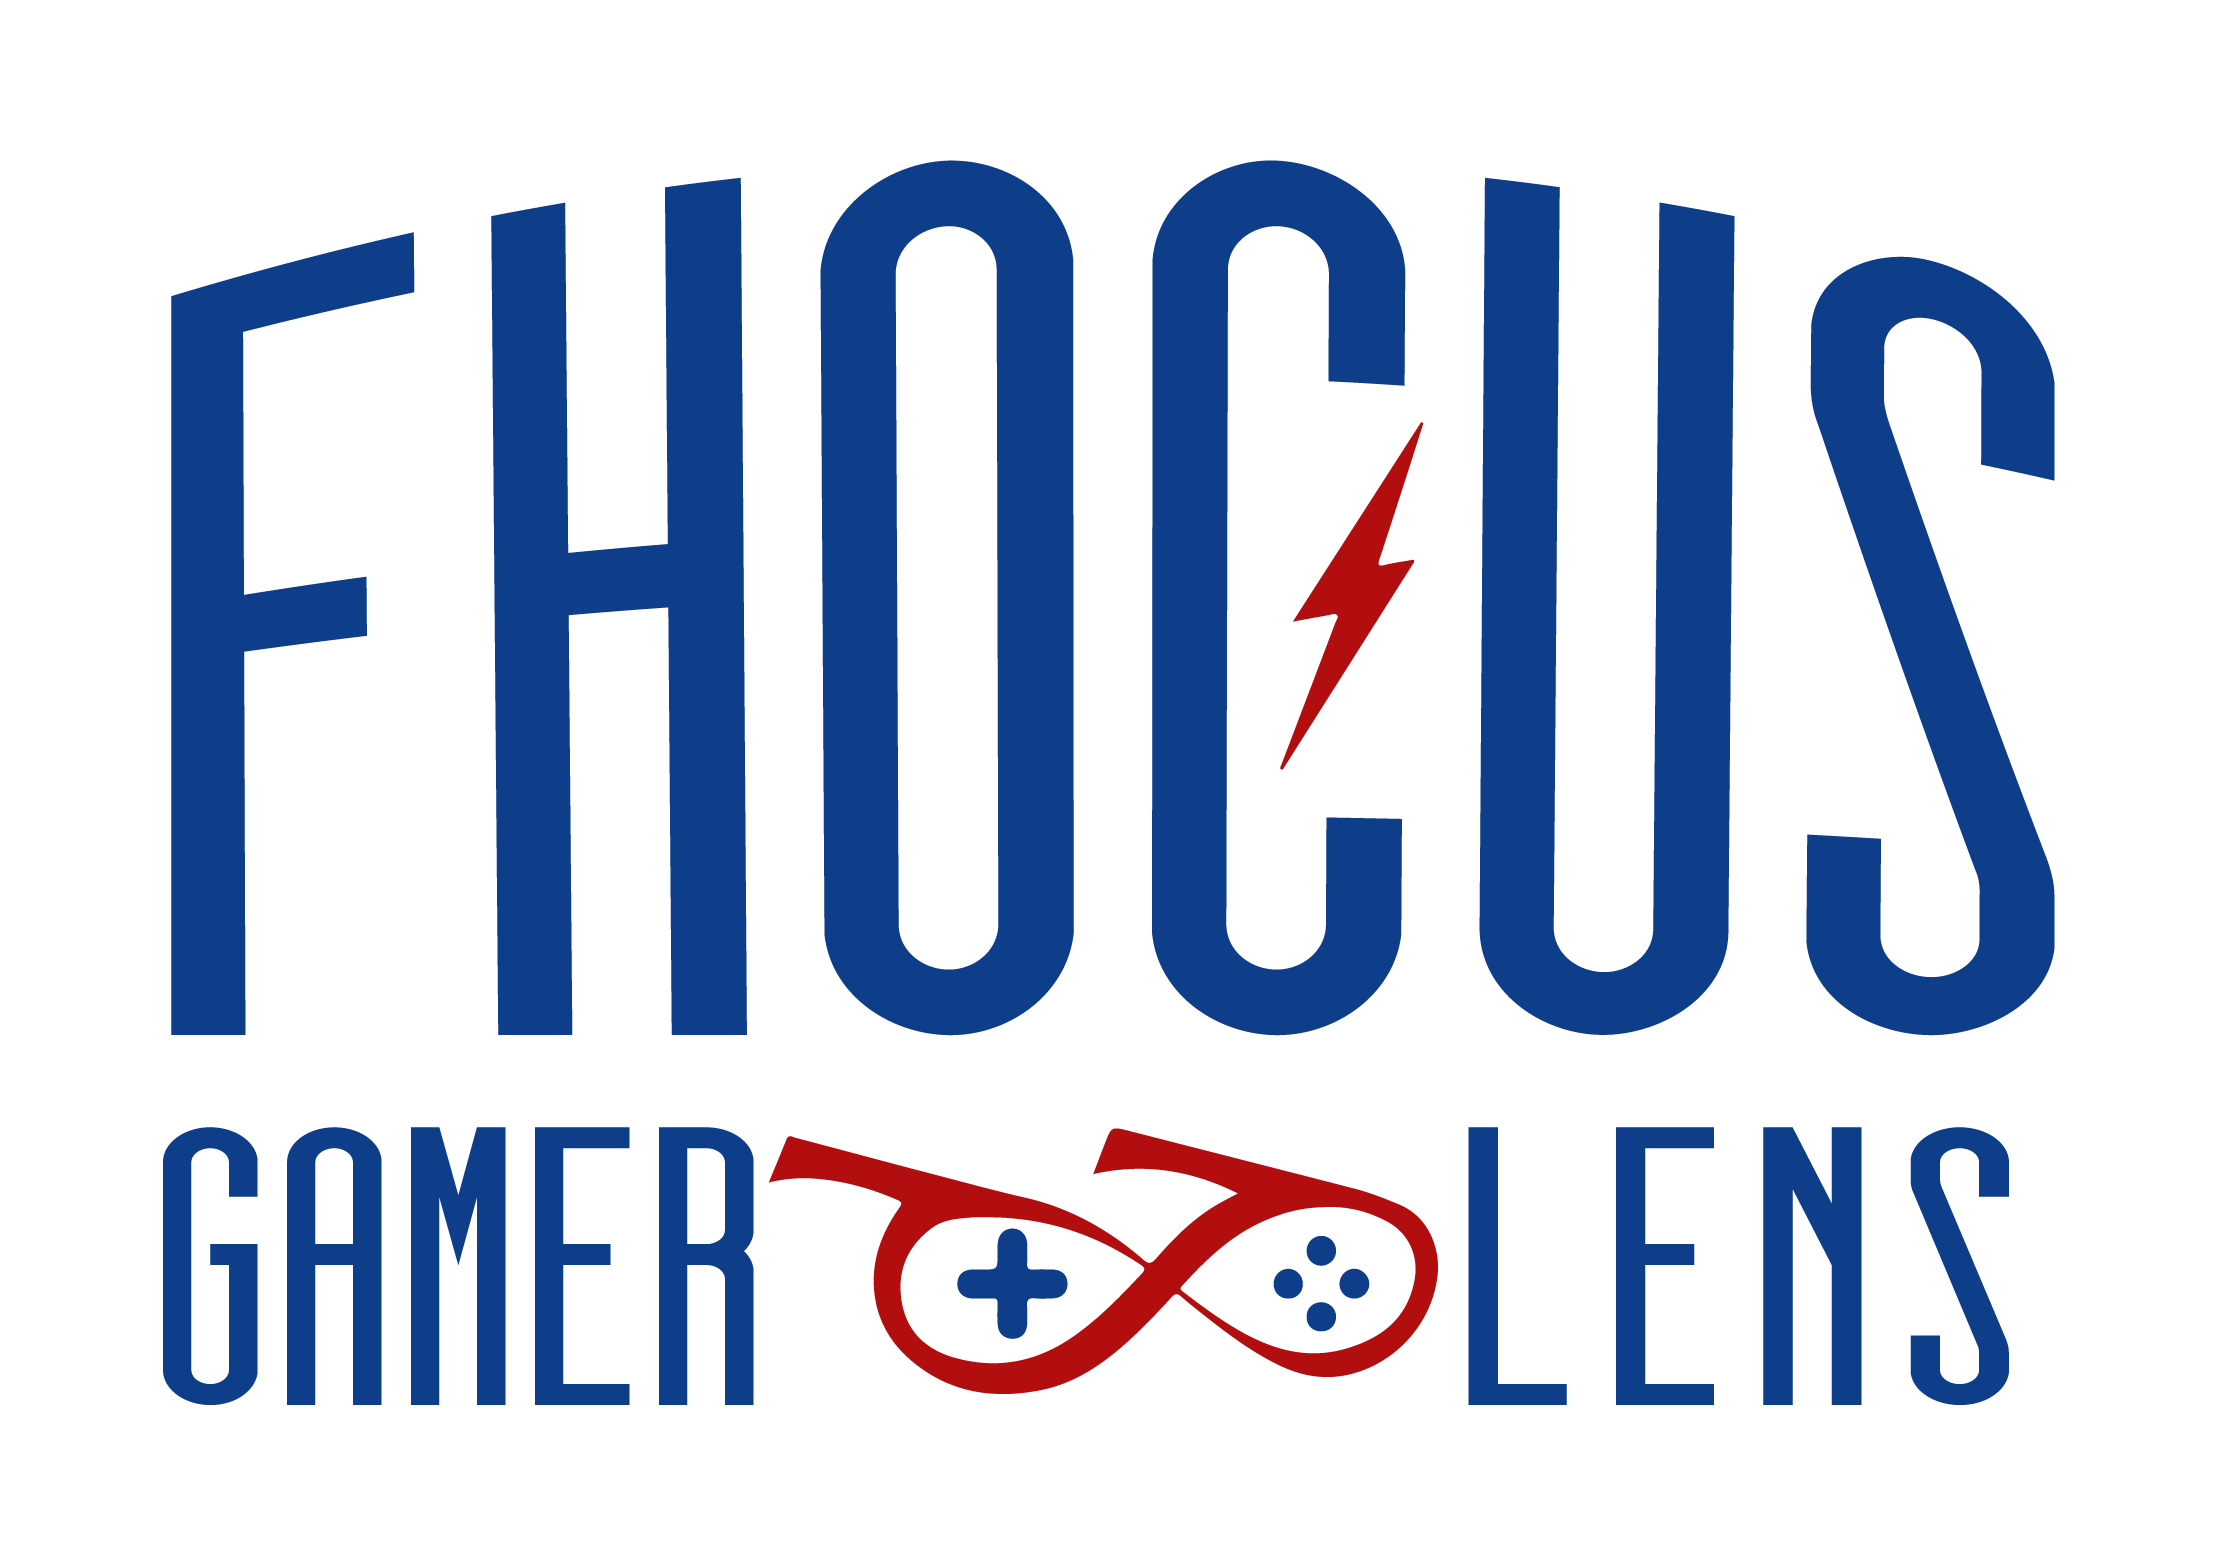 Logo Fhocus Gamer Lens, cores azul e vermelha